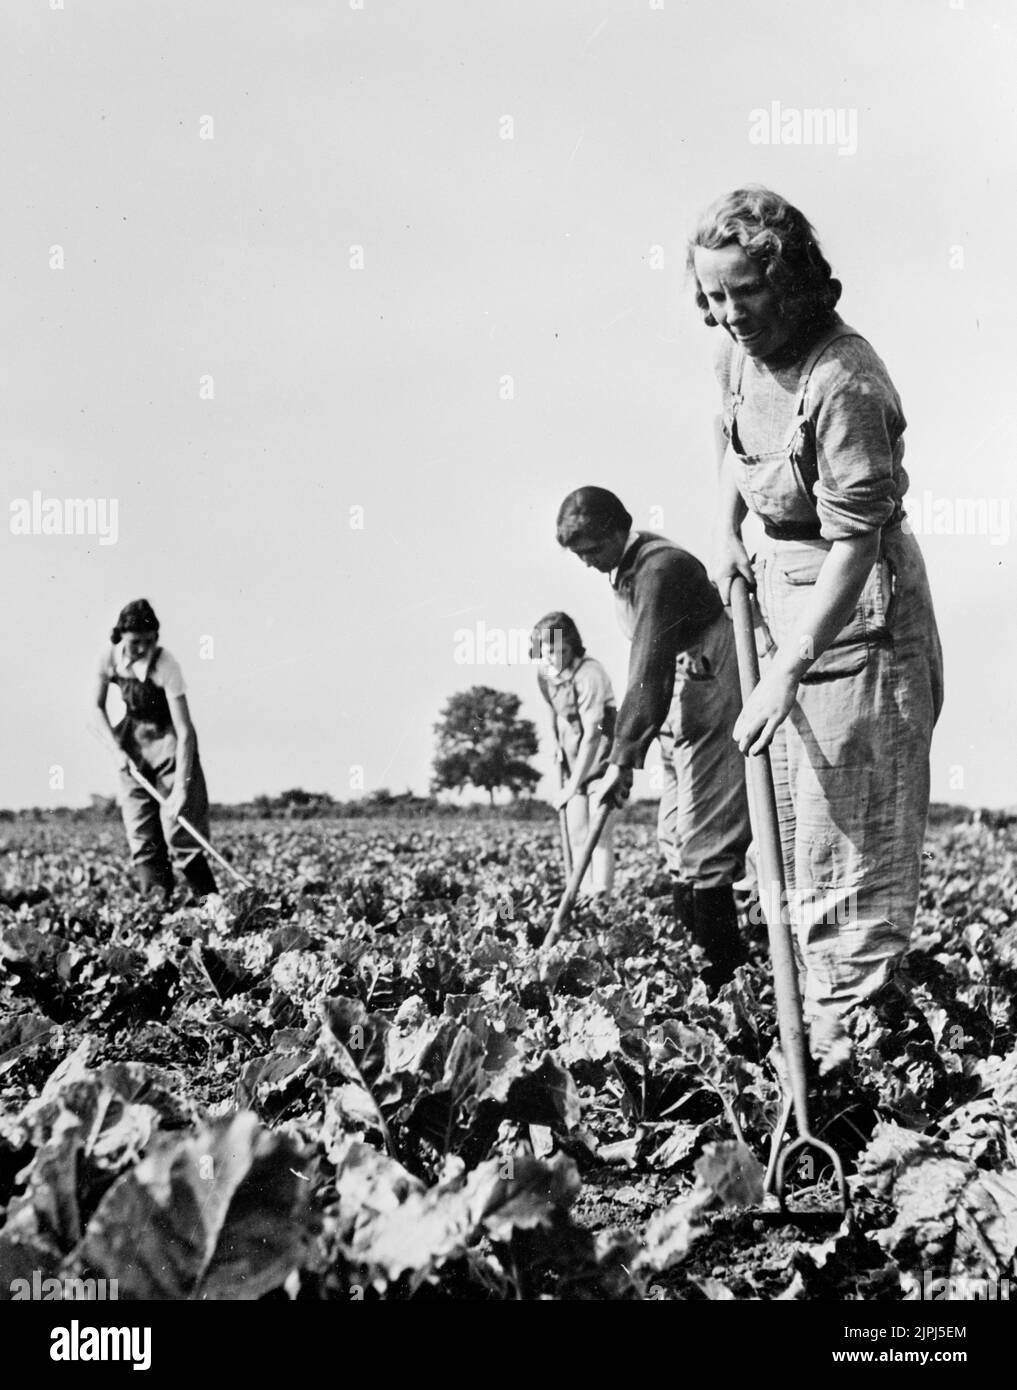 Femmes travaillant dans les champs produisant des cultures pendant la guerre. 1943 l'Armée de terre des femmes (ALW) a apporté une contribution importante à l'amélioration de la production alimentaire de la Grande-Bretagne pendant la Seconde Guerre mondiale. Banque D'Images